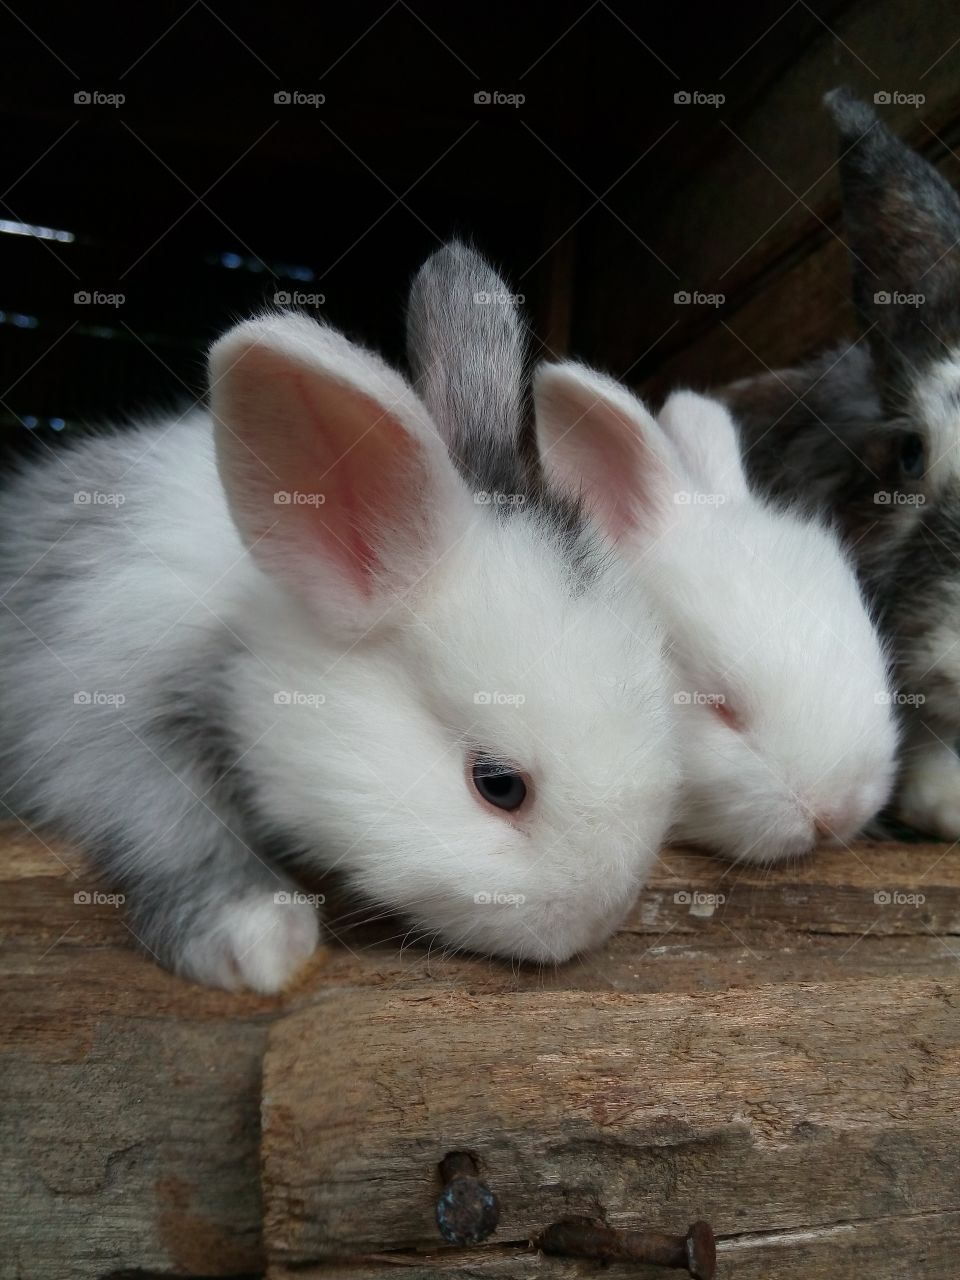 Adorable bunnies